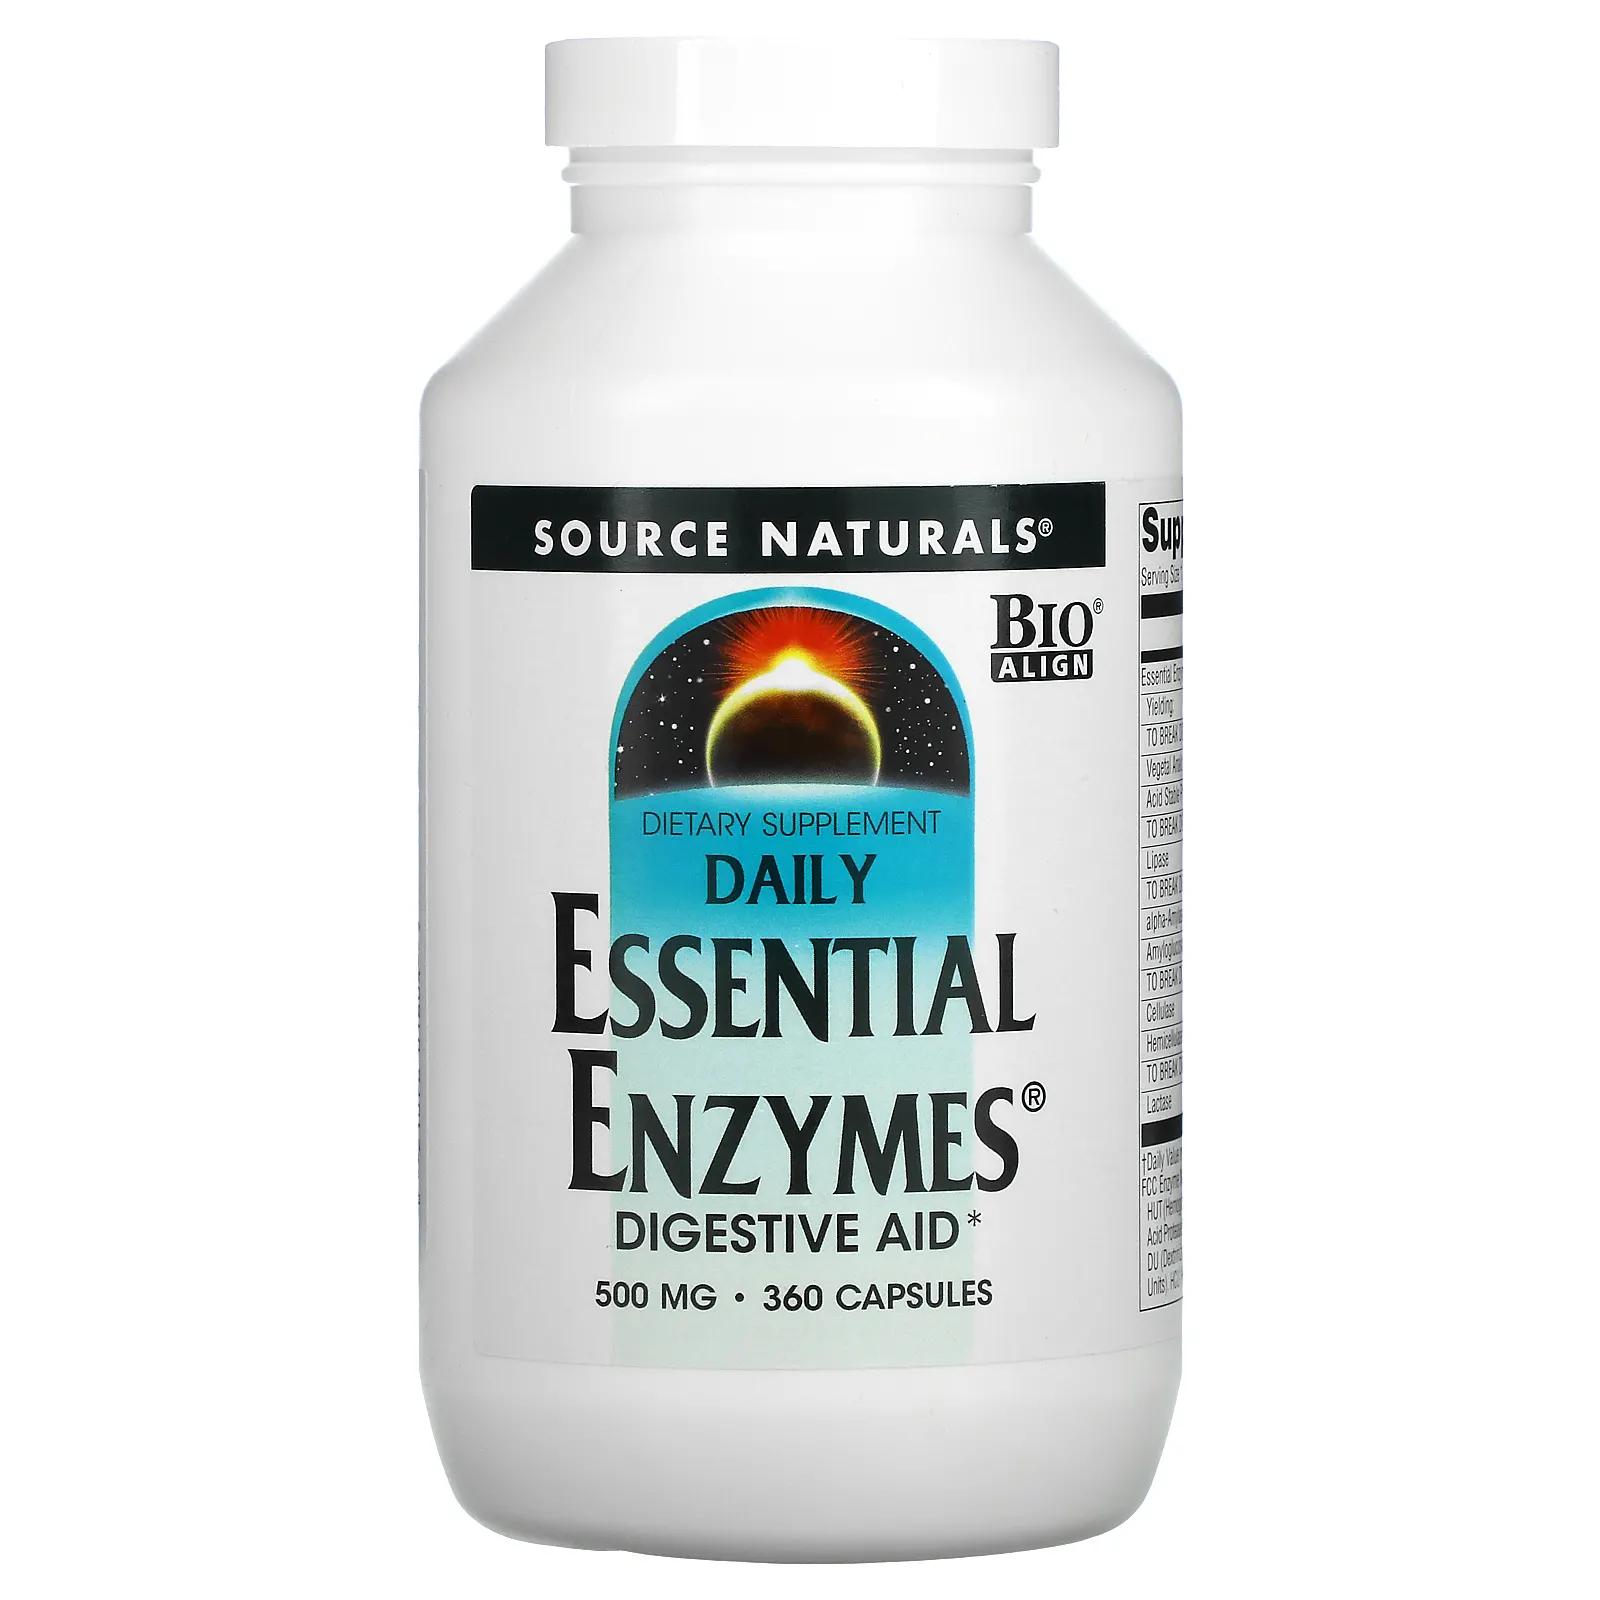 source naturals daily essential enzymes добавка с незаменимыми ферментами для ежедневного использования 500 мг 240 капсул Source Naturals Daily Essential Enzymes пищеварительные ферменты для ежедневного использования 500 мг 360 капсул